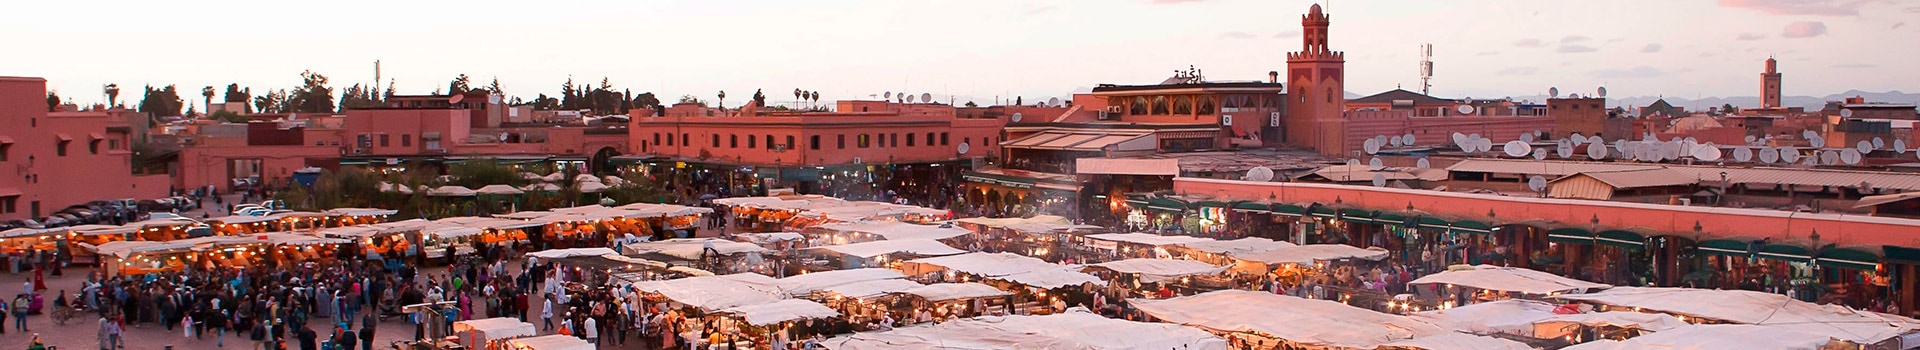 Girona - Marrakech